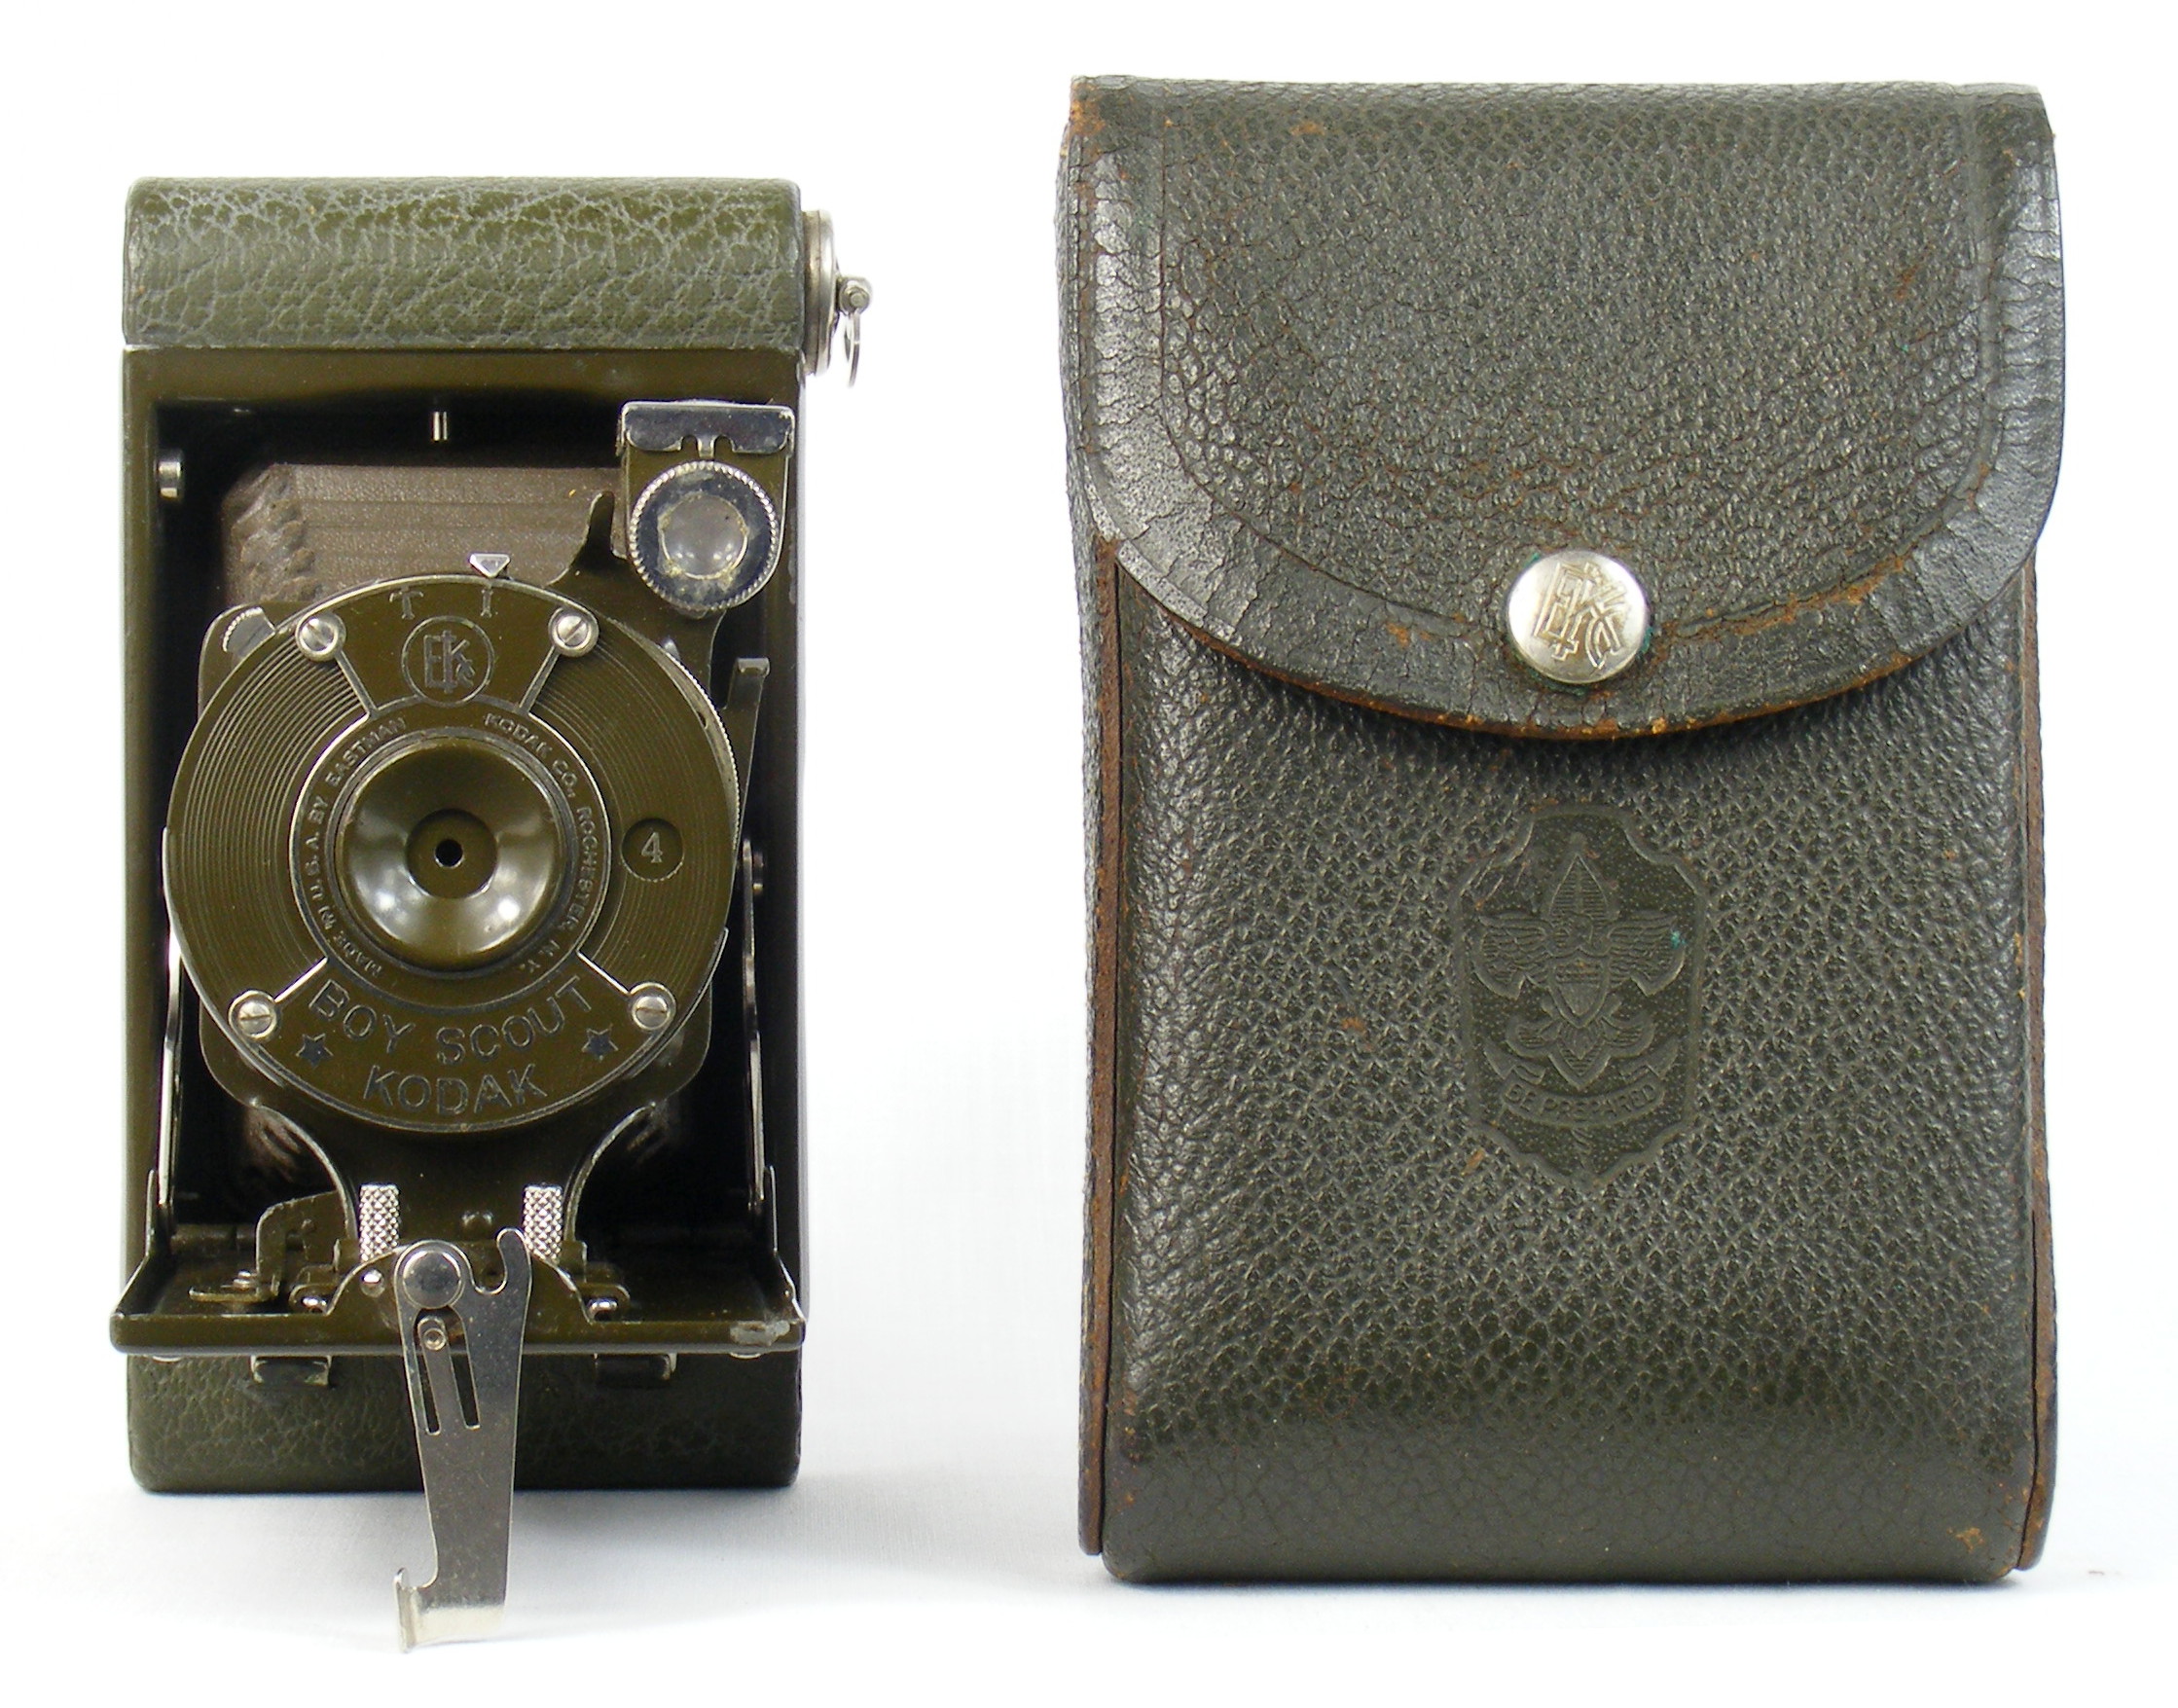 Image of Kodak Boy Scout camera and matching case